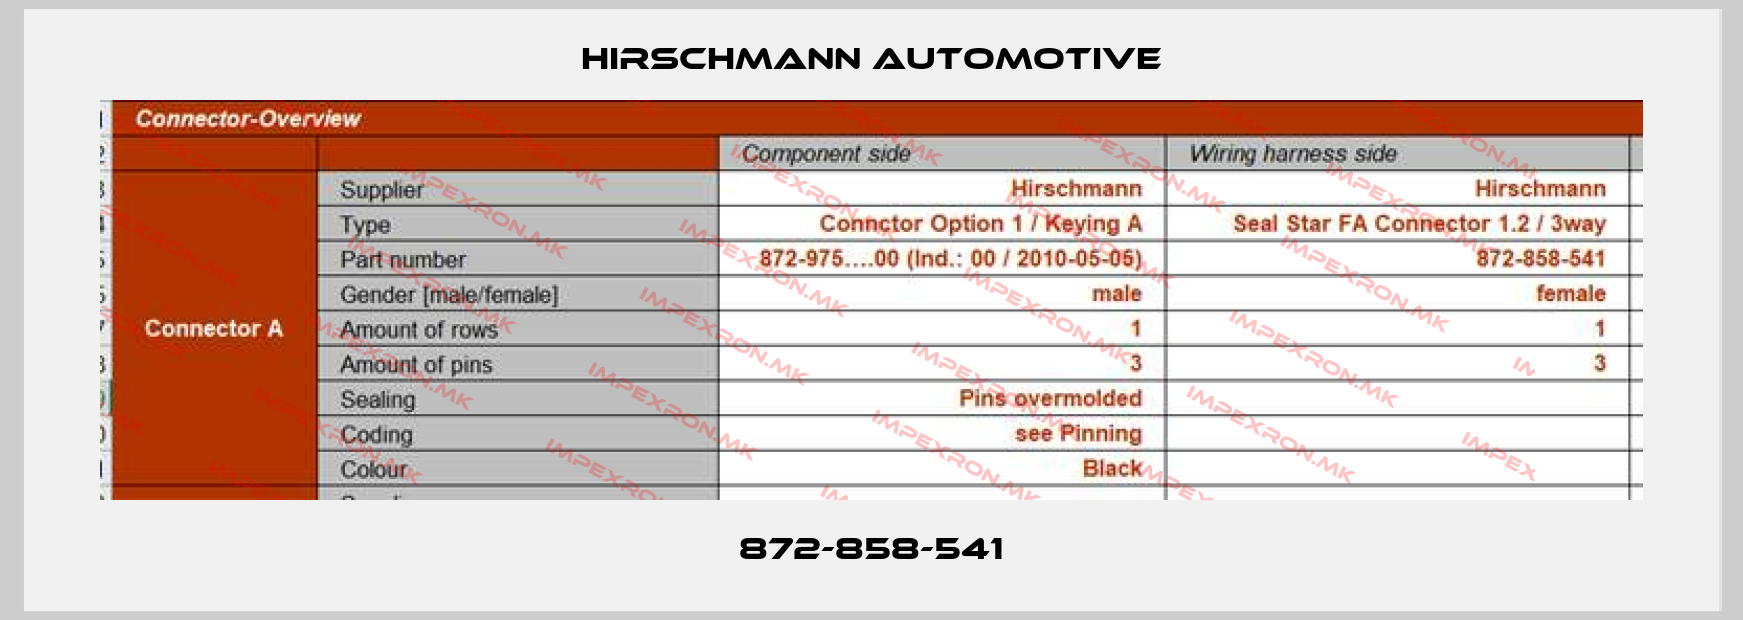 Hirschmann Automotive-872-858-541price